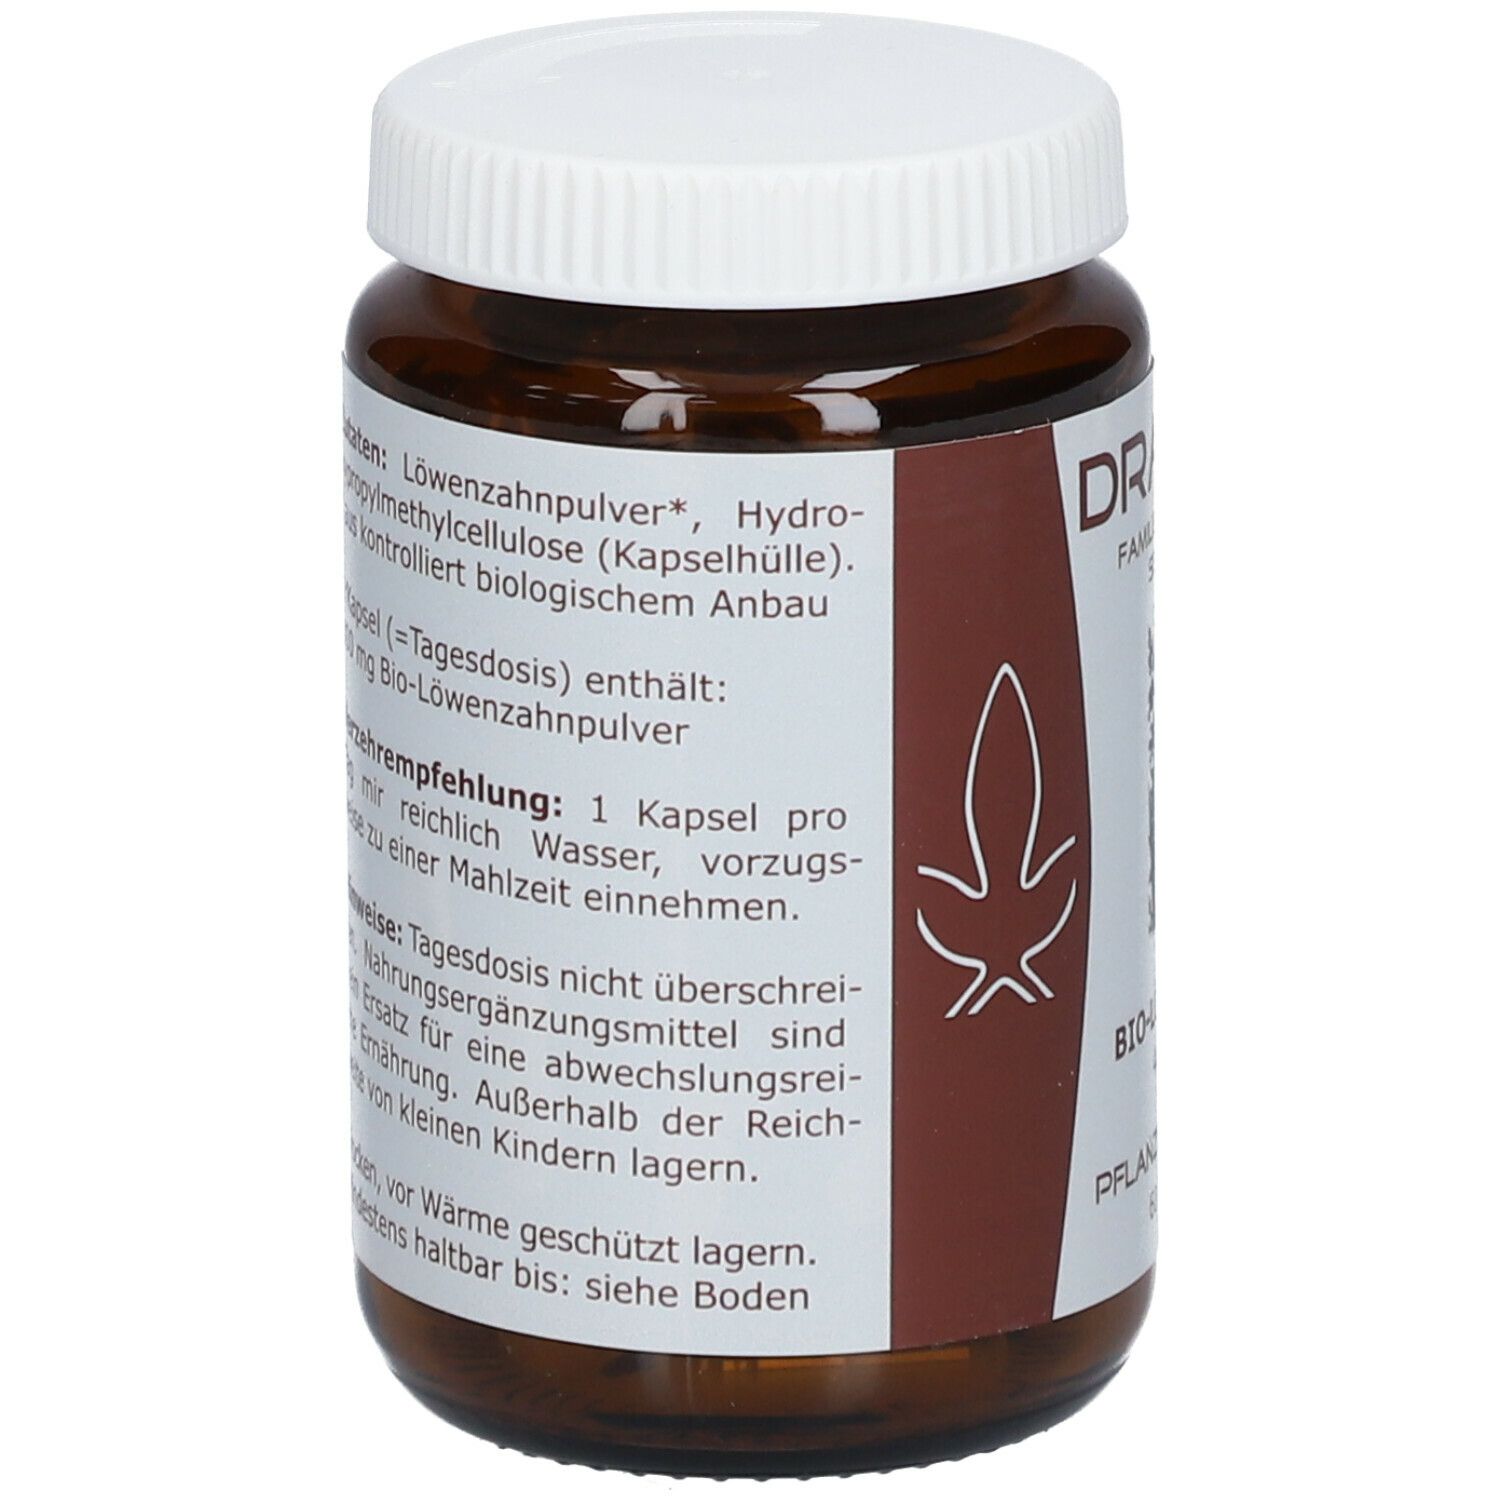 DRAPAL® Bio-Löwenzahn 400 mg